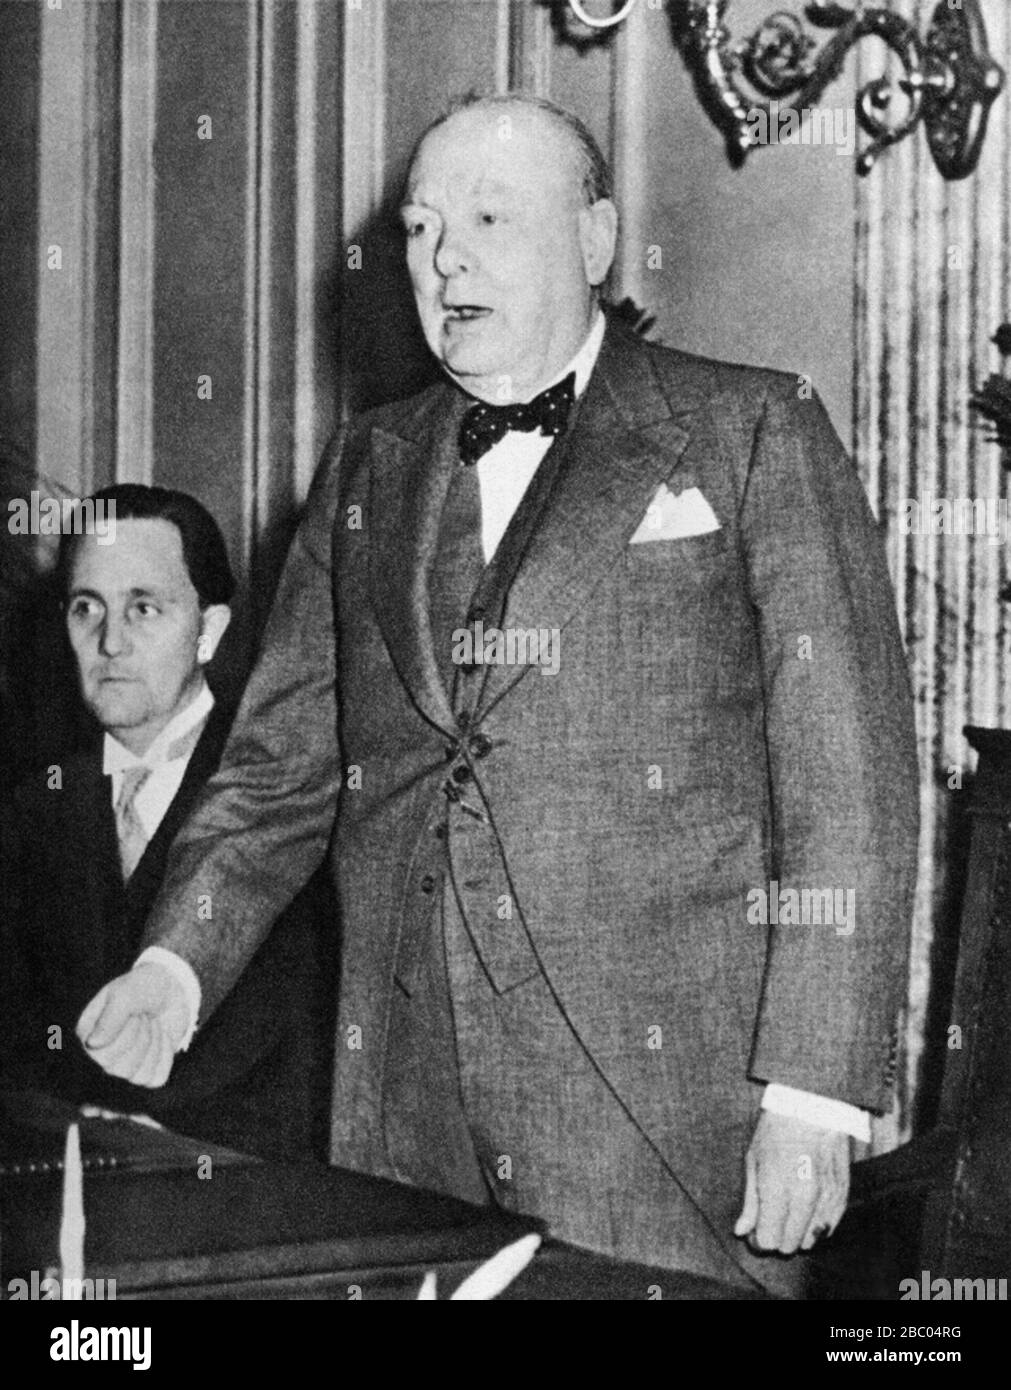 Winston Churchill pronunciando un discurso sobre la recepción de la Libertad de la Ciudad de Luxemburgo. 15 de julio de 1946. Foto de stock